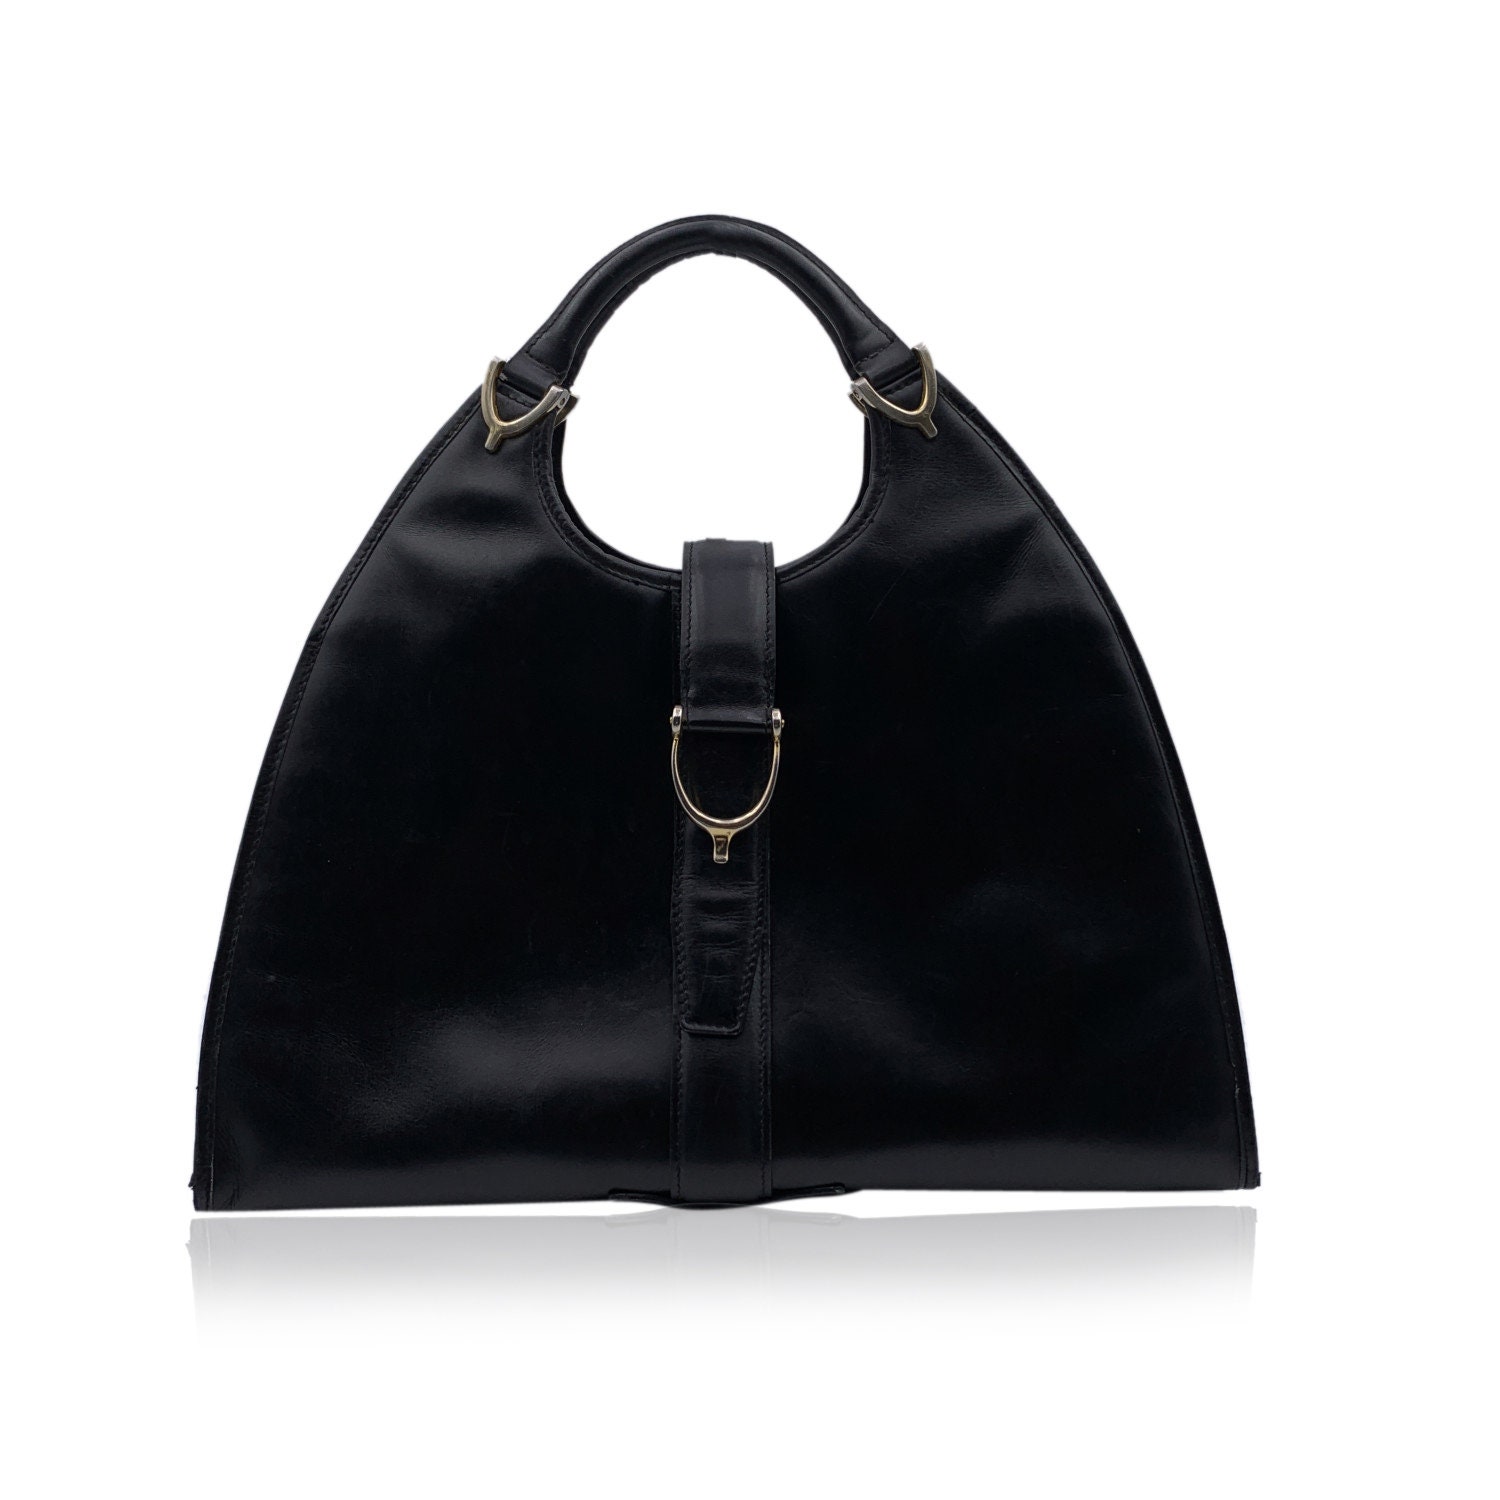 Hand - Bag - GUCCI - Boat - Canvas - ep_vintage luxury Store - Black -  Leather - Gucci guilty pour femme original parfum - 1103 – dct - Bag - GG -  039